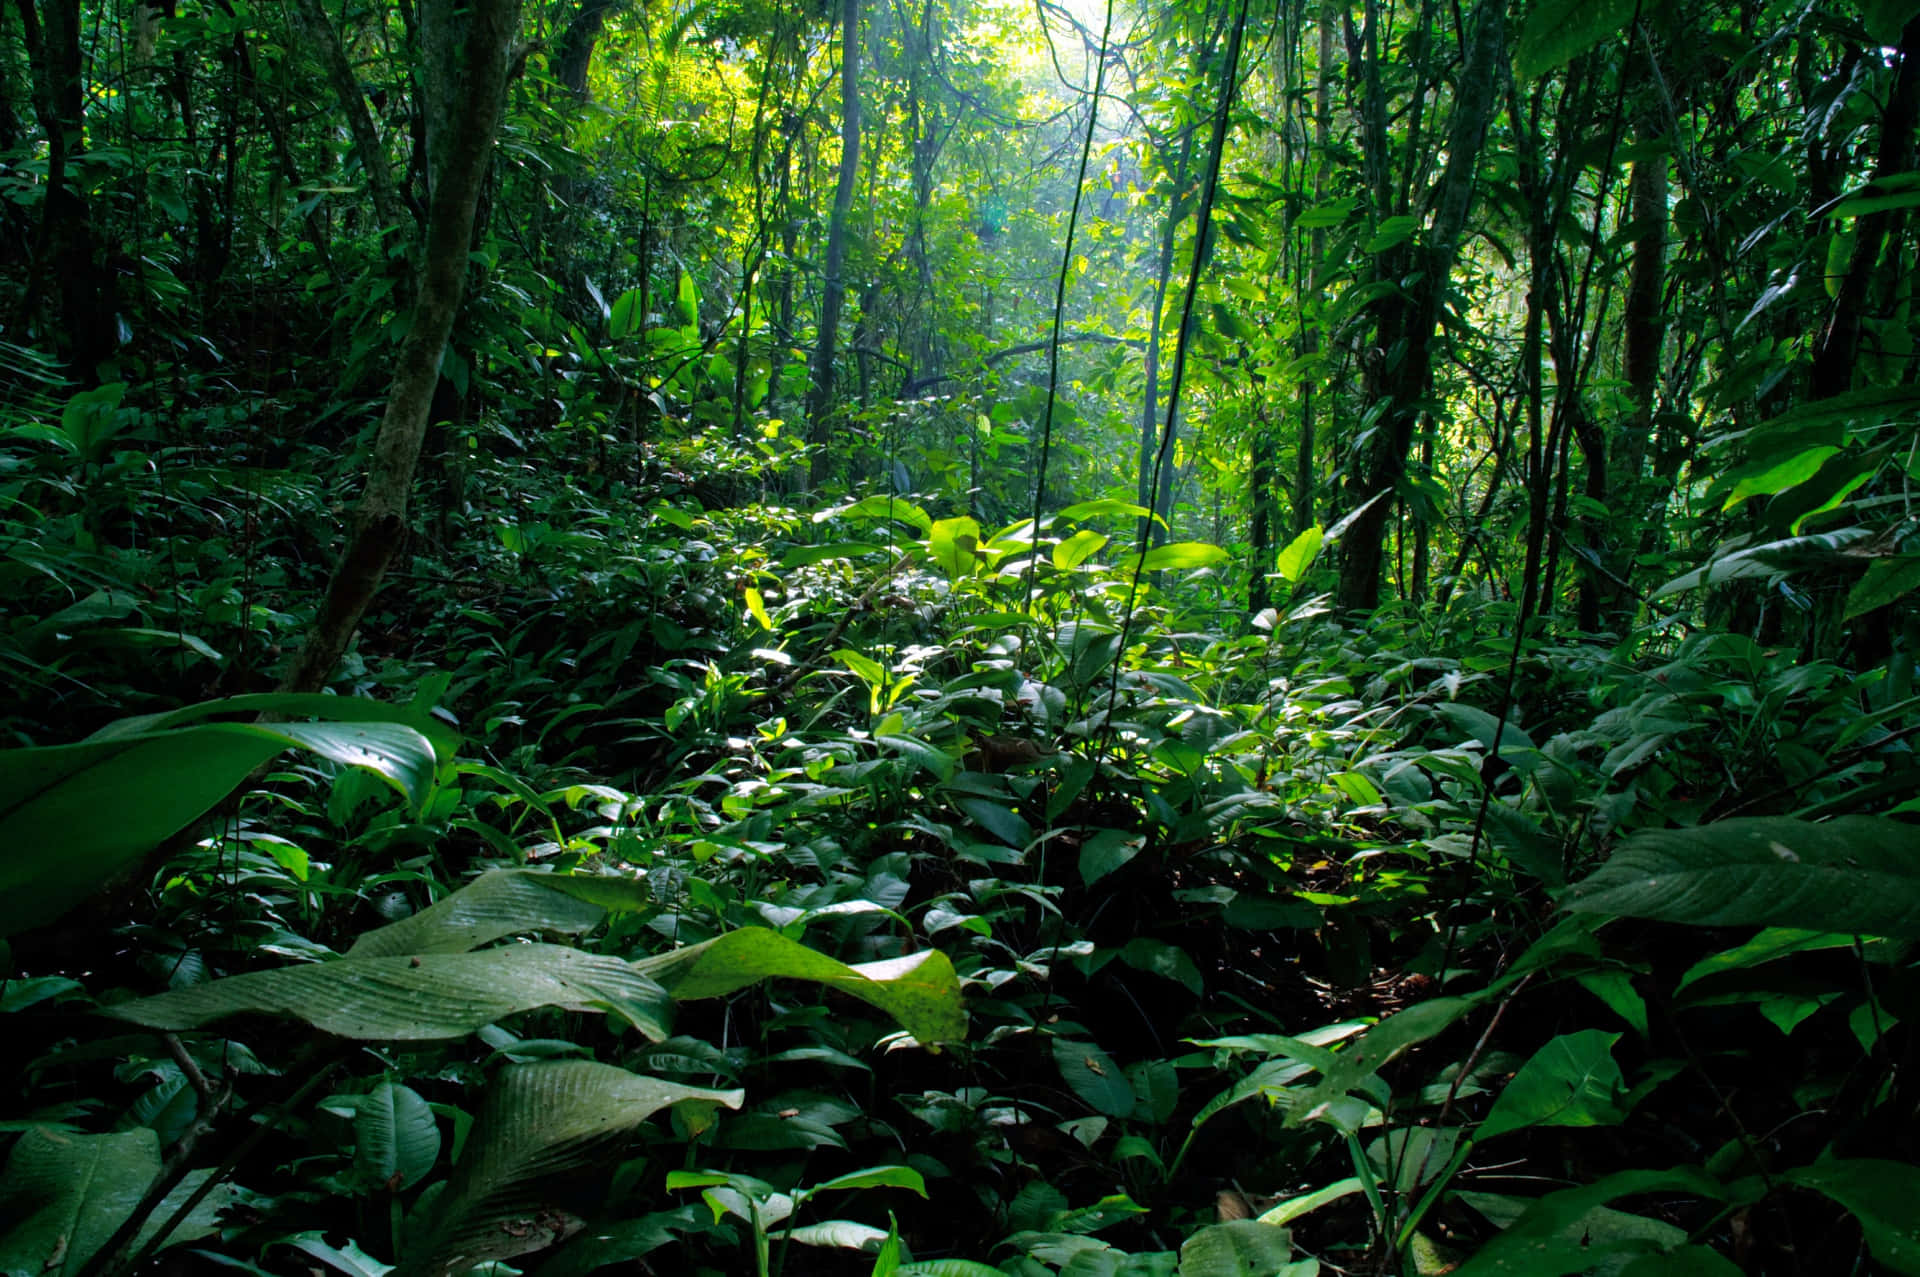 Eineneue Welt In Einem Üppigen, Grünen Dschungel Erforschen